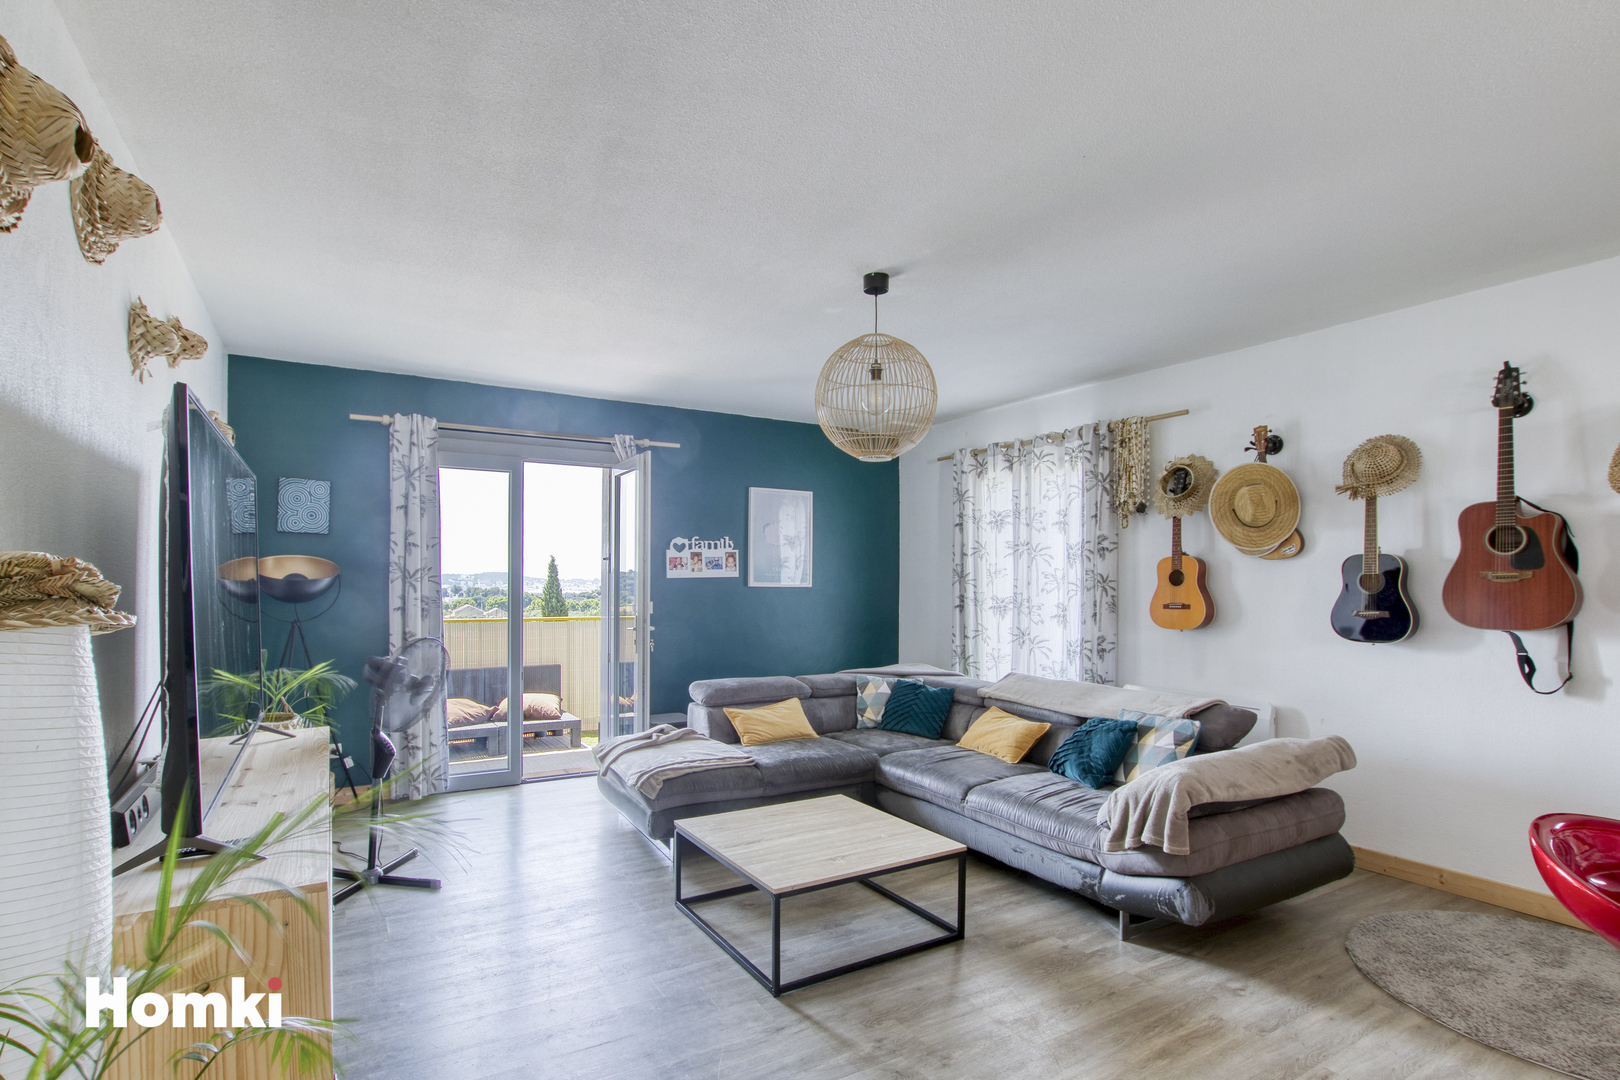 Homki - Vente Appartement  de 86.0 m² à Toulon 83200